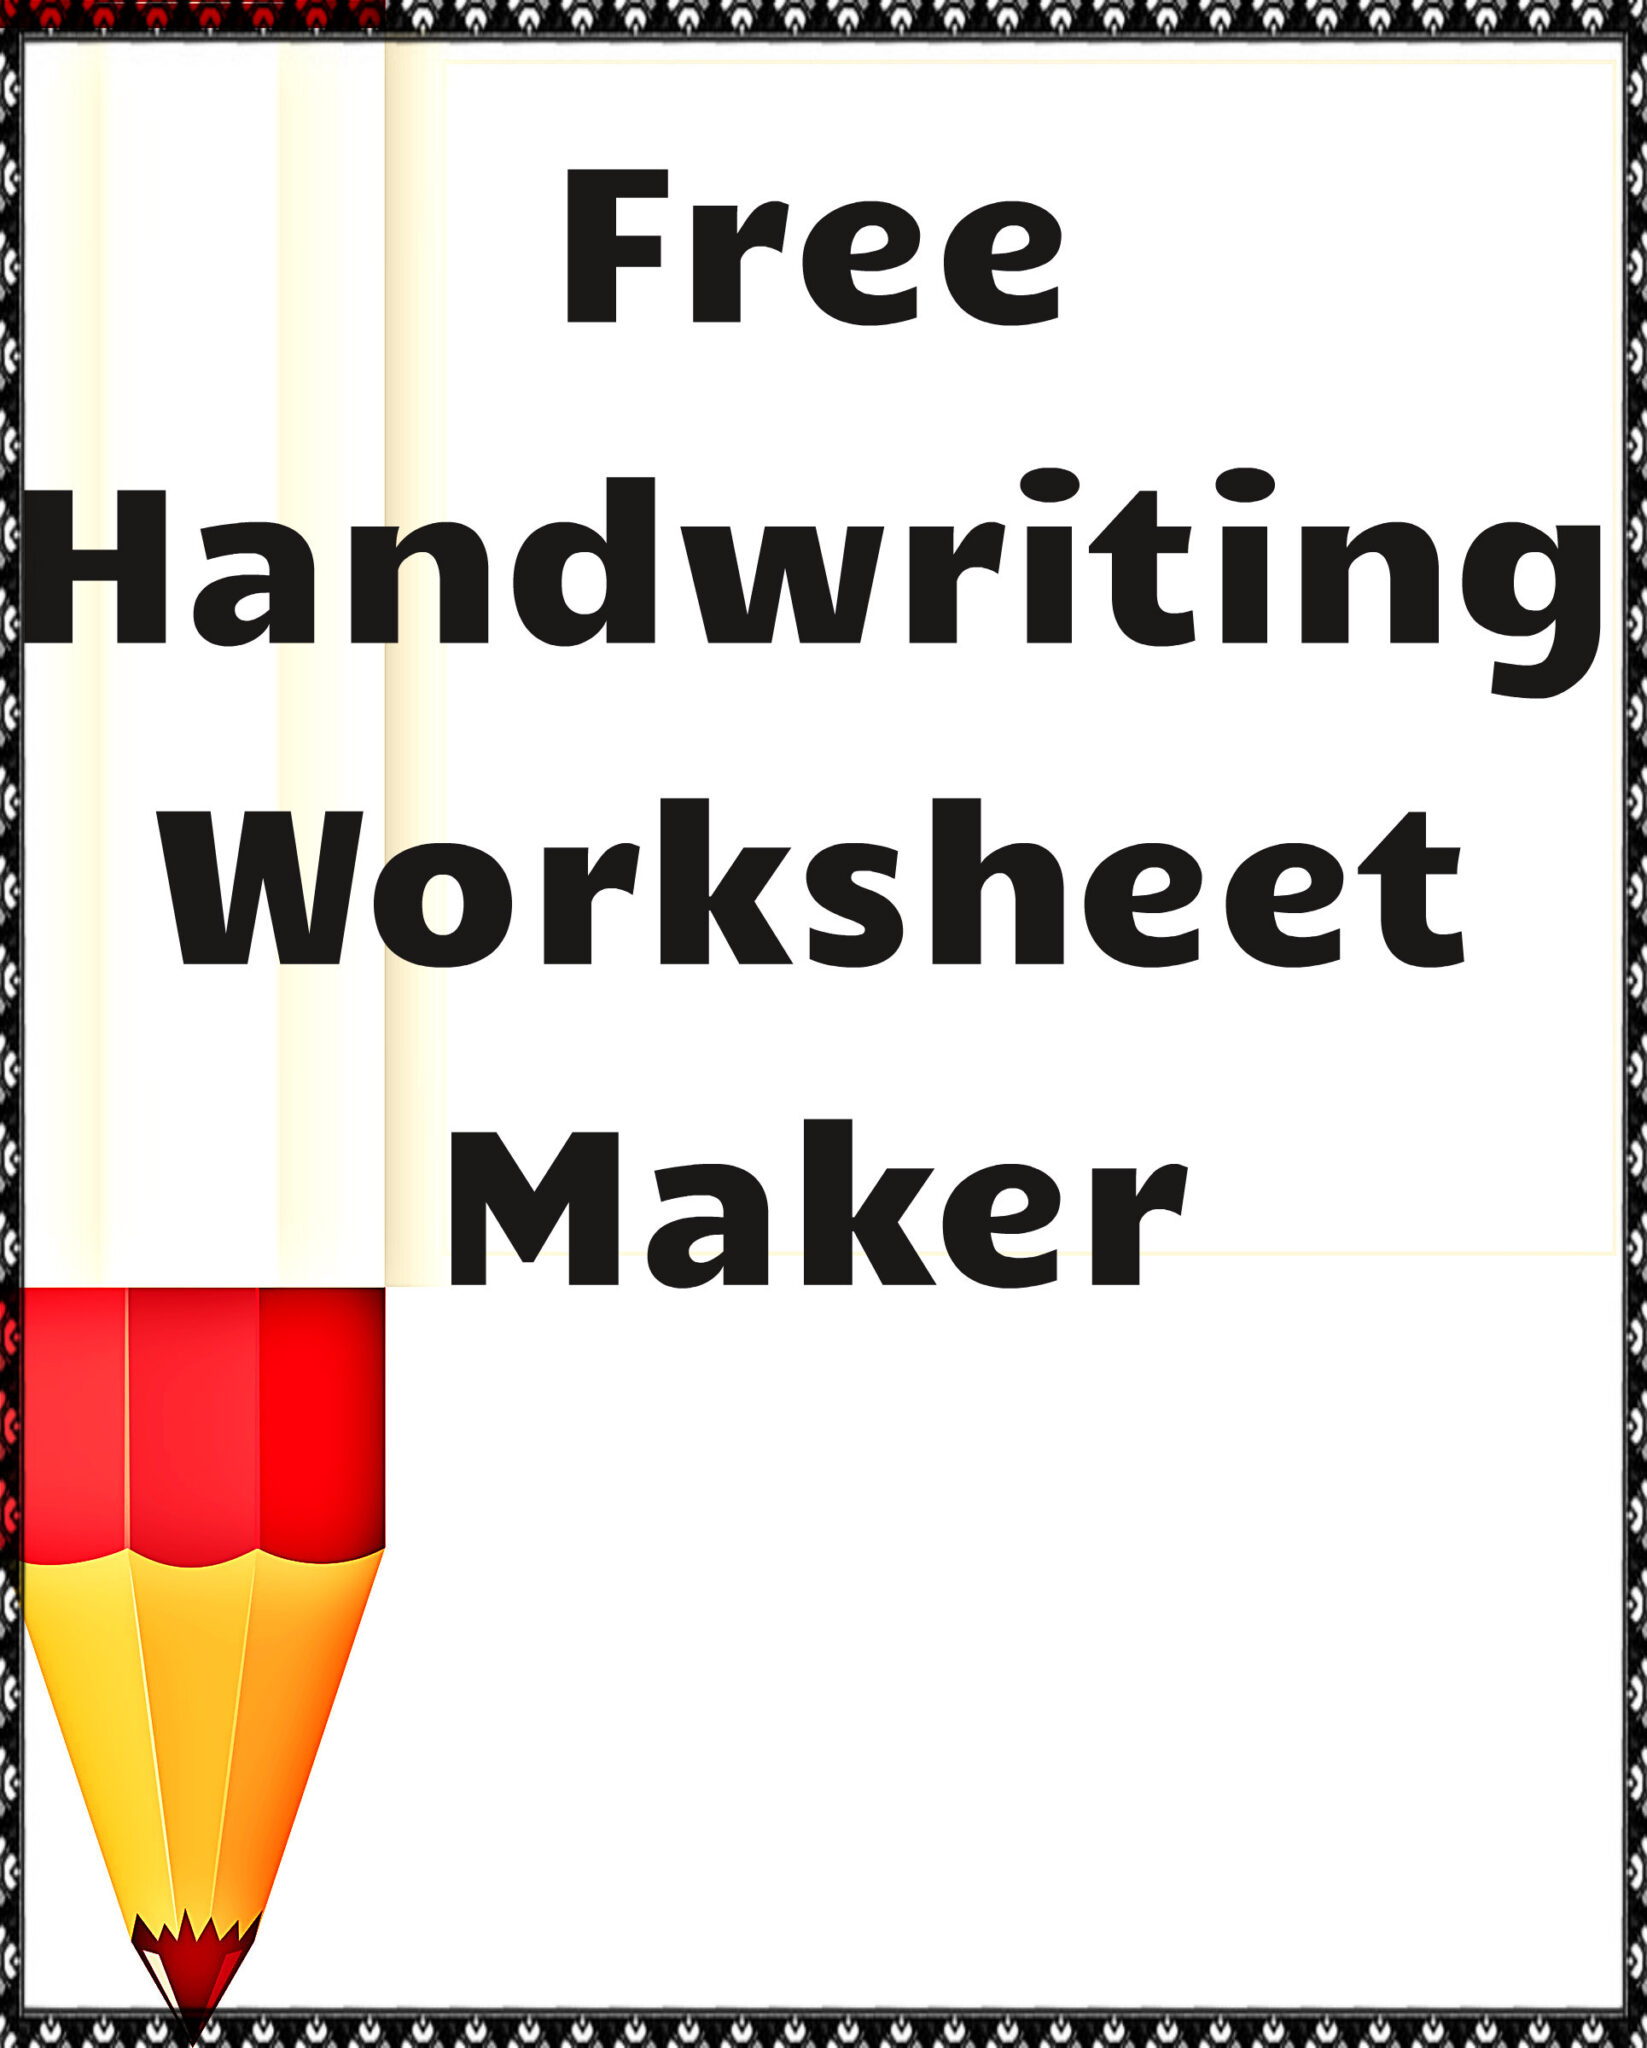 handwriting assignment maker